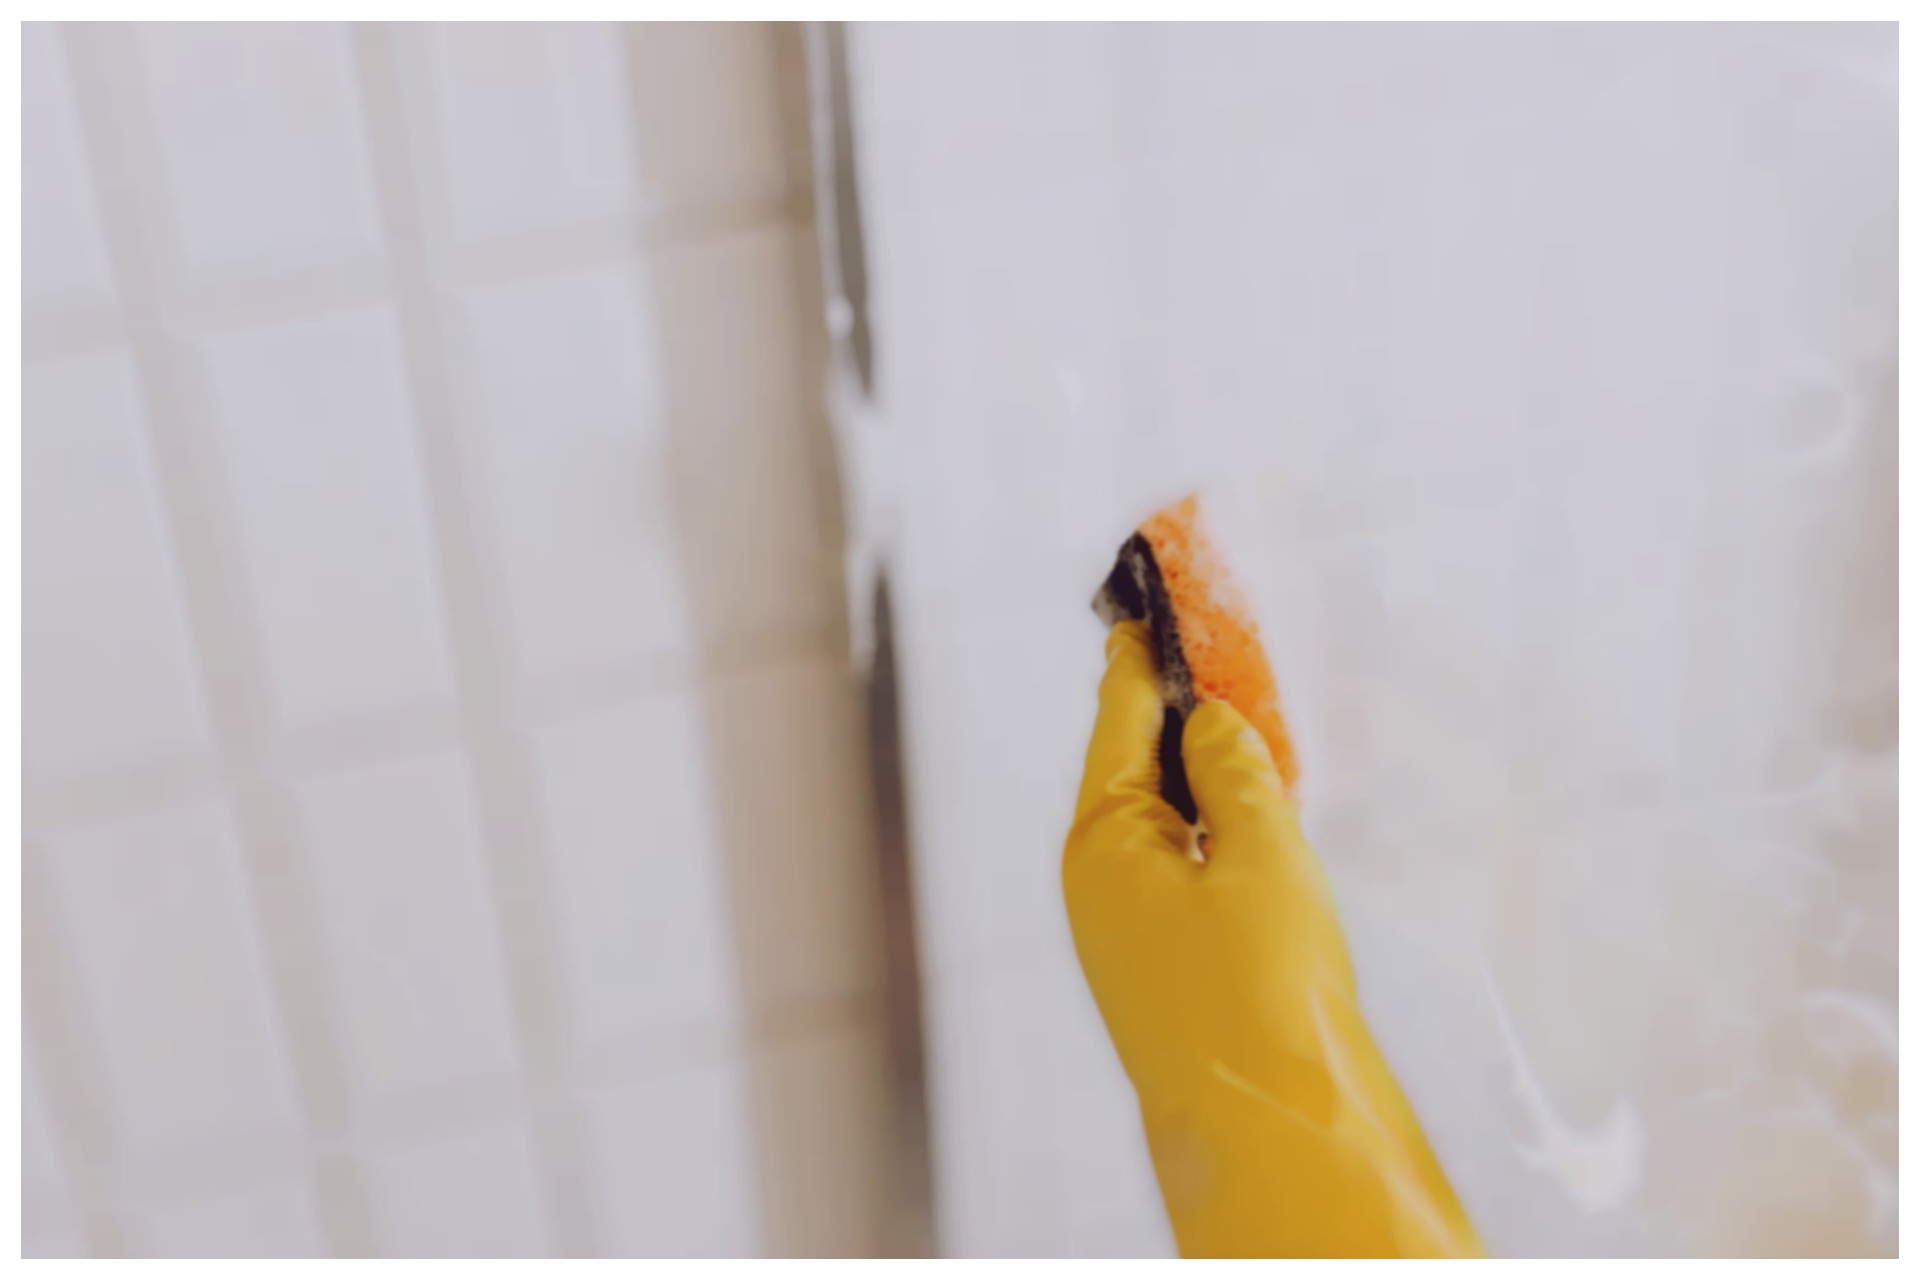 Pessoa usando de borracha amarela pressionando um borrifador para aplicar removedor de manchas no box de vidro do banheiro